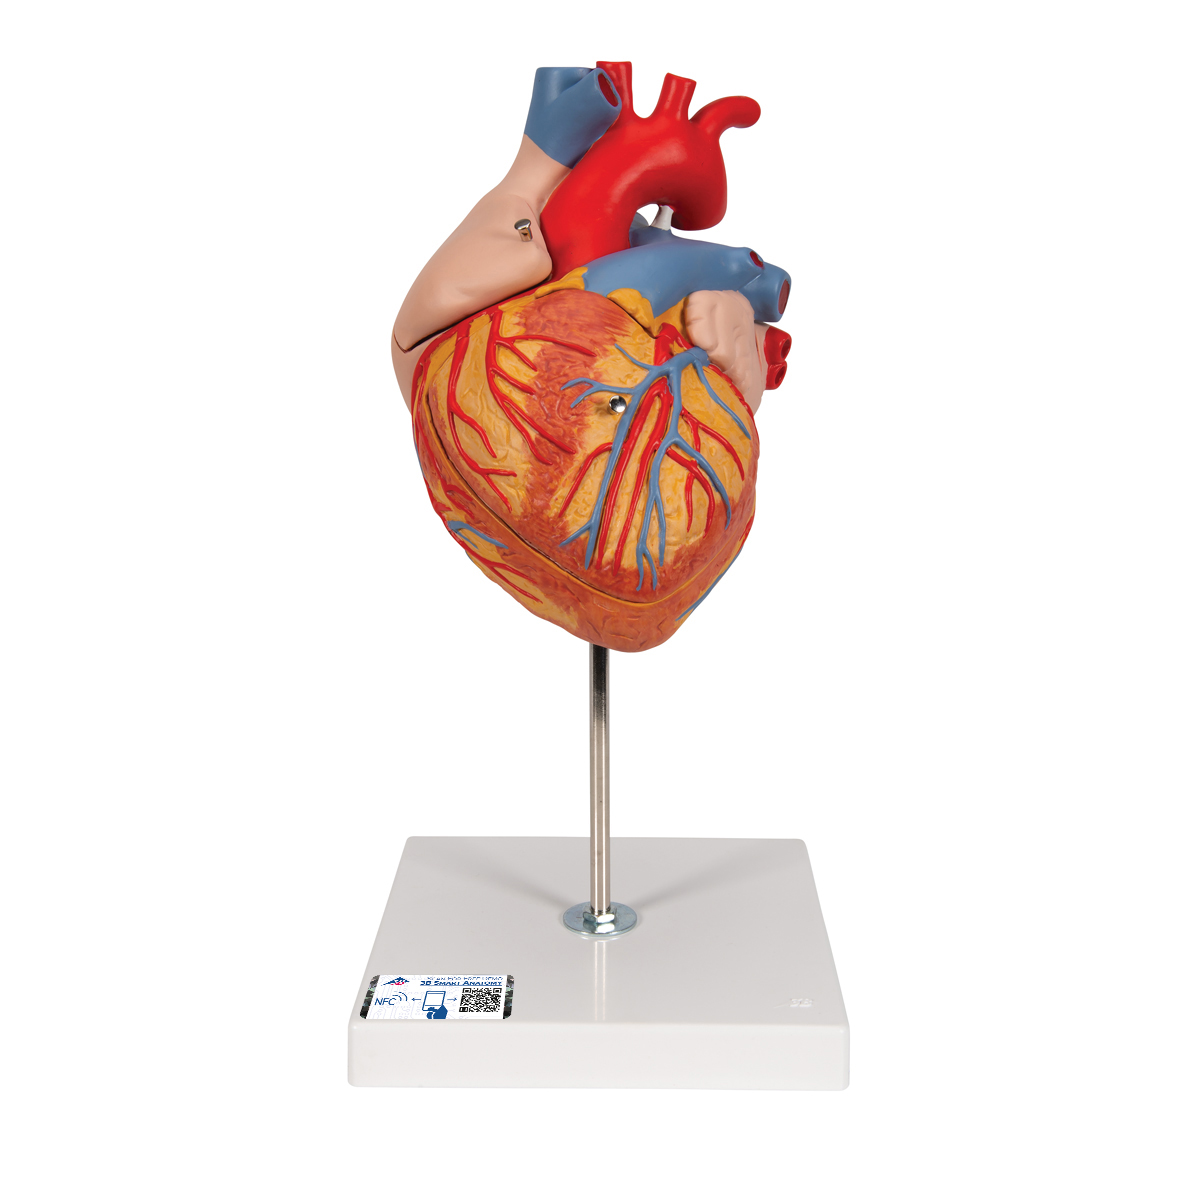 心脏模型,实物的2倍,4部分 - 3b smart anatomy